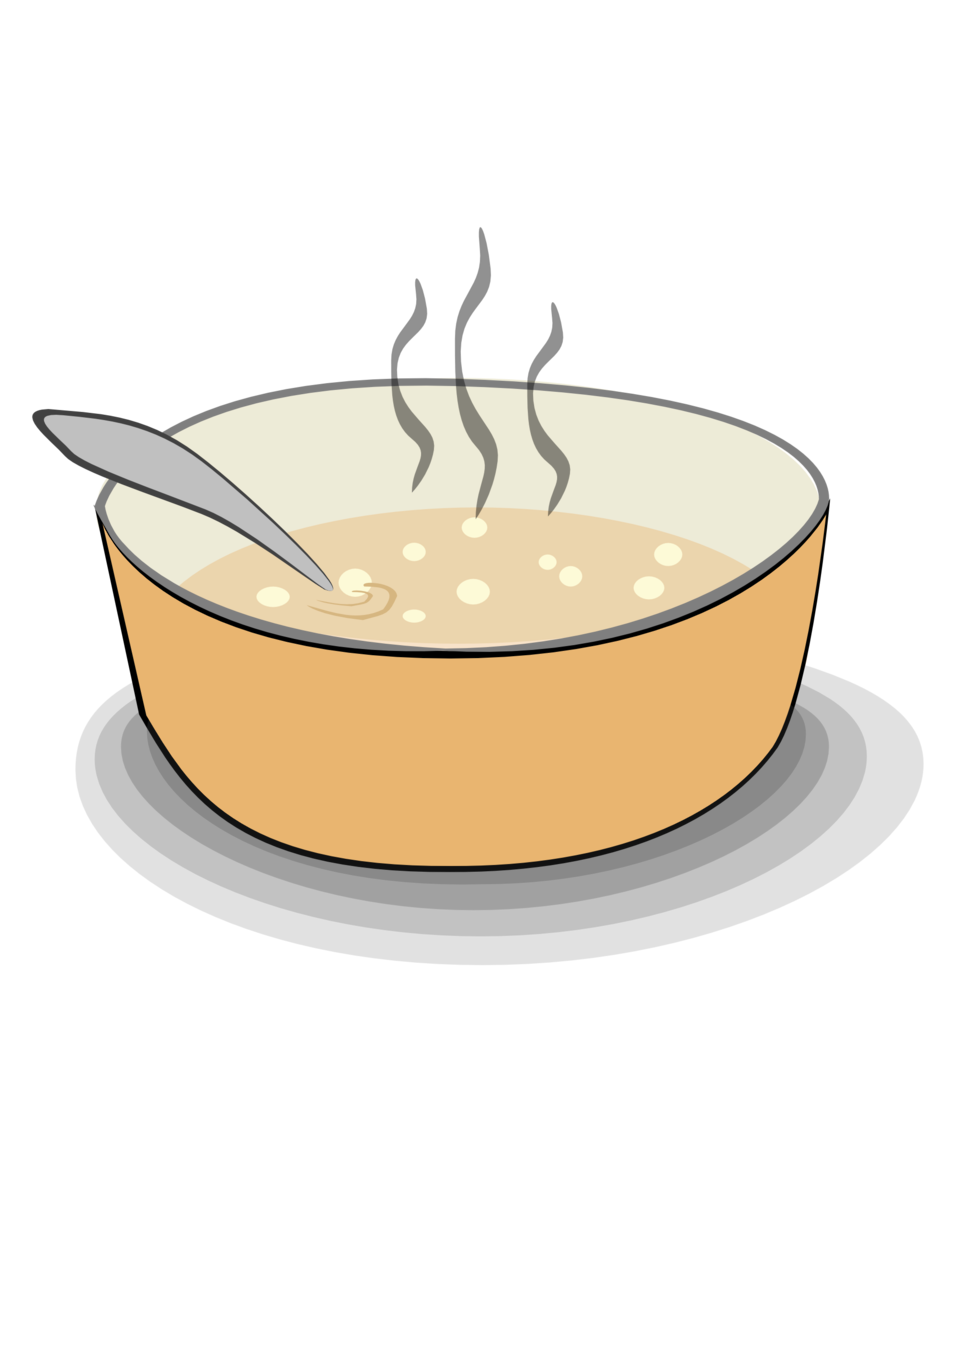 Soup can soup